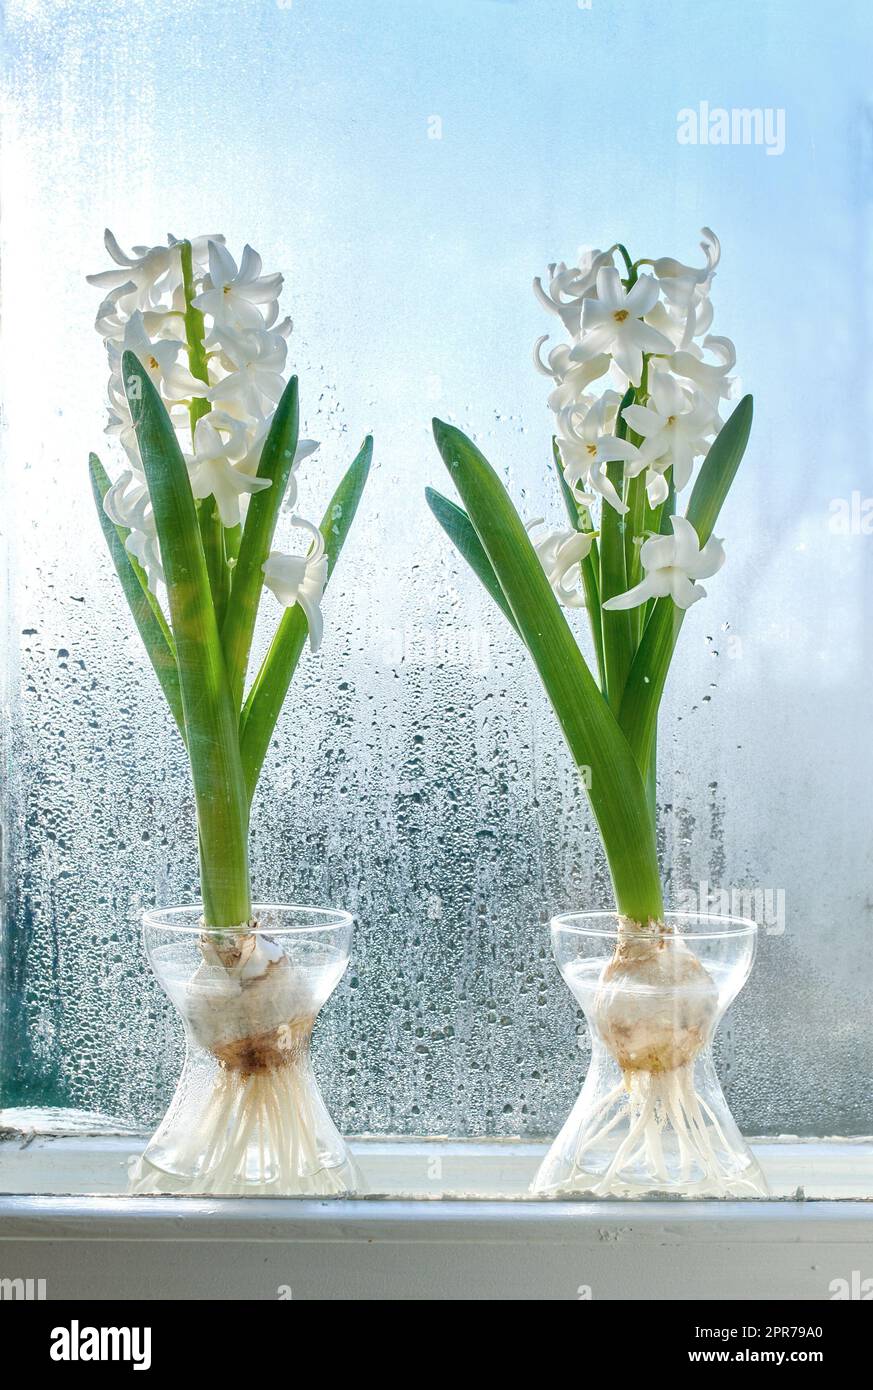 Primer plano de Crocus que crece en agua dulce, planta en un alféizar de ventana. Dos racimos blancos de flores que se suman a la belleza en la naturaleza y el ambiente tranquilo, mientras crecen en un invernadero con copyspace Foto de stock